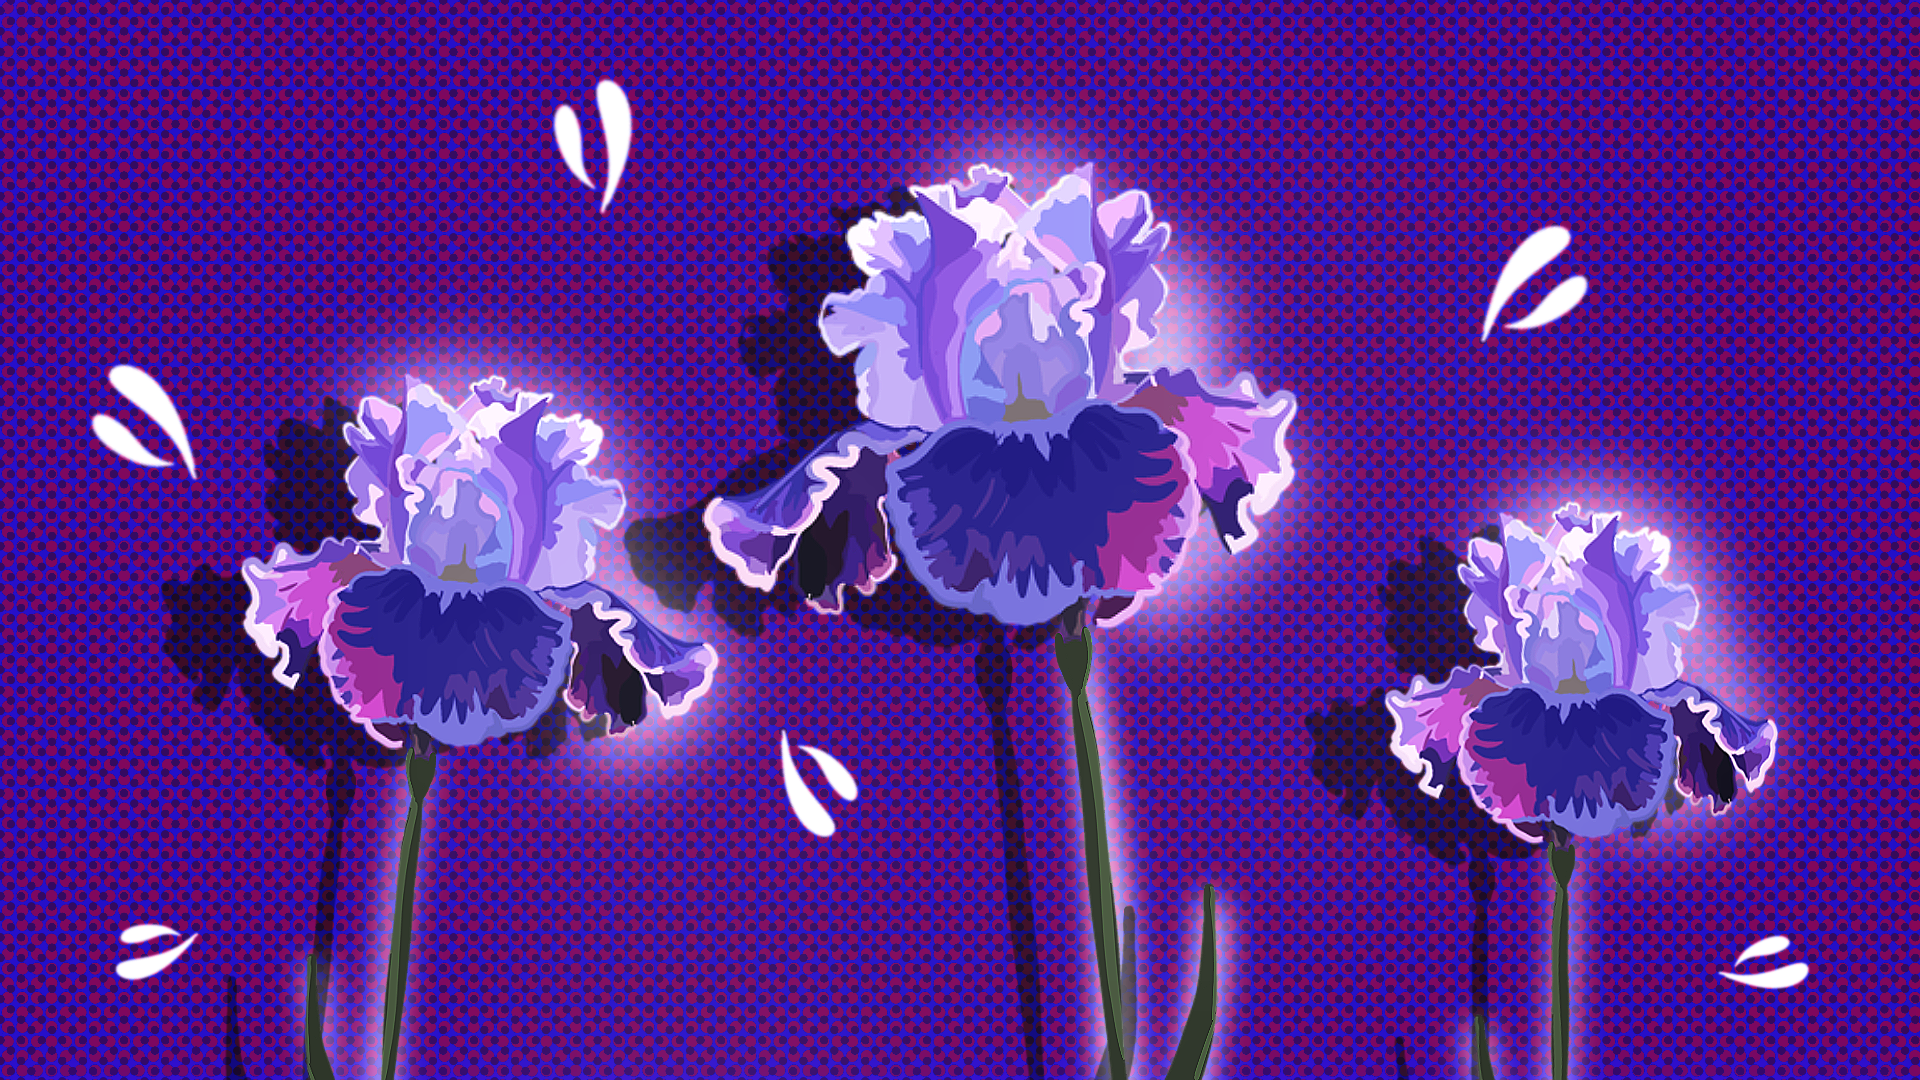 Image of Iris flowers